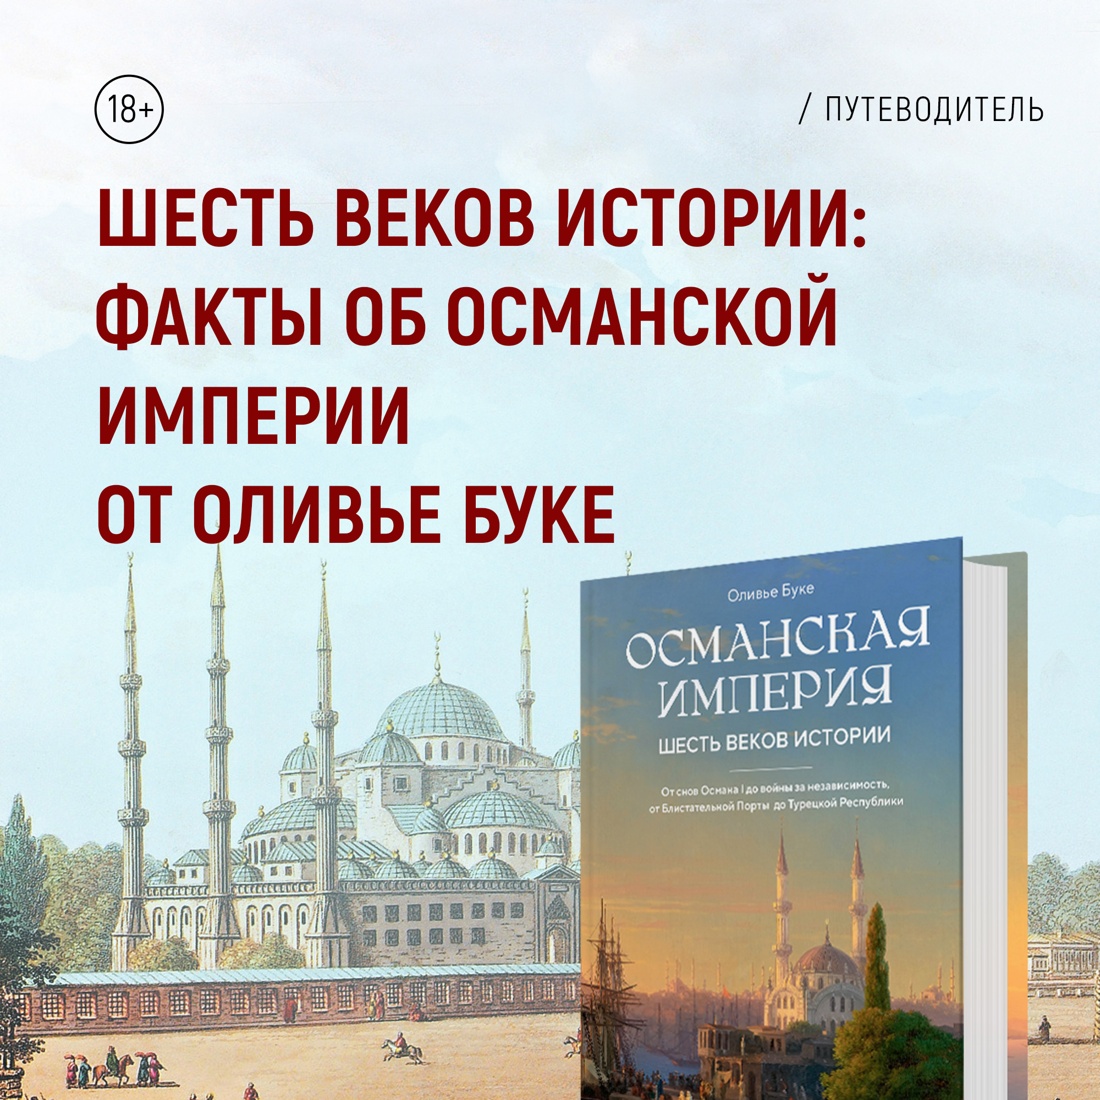 Промо материал к книге "Османская империя. Шесть веков истории" №7